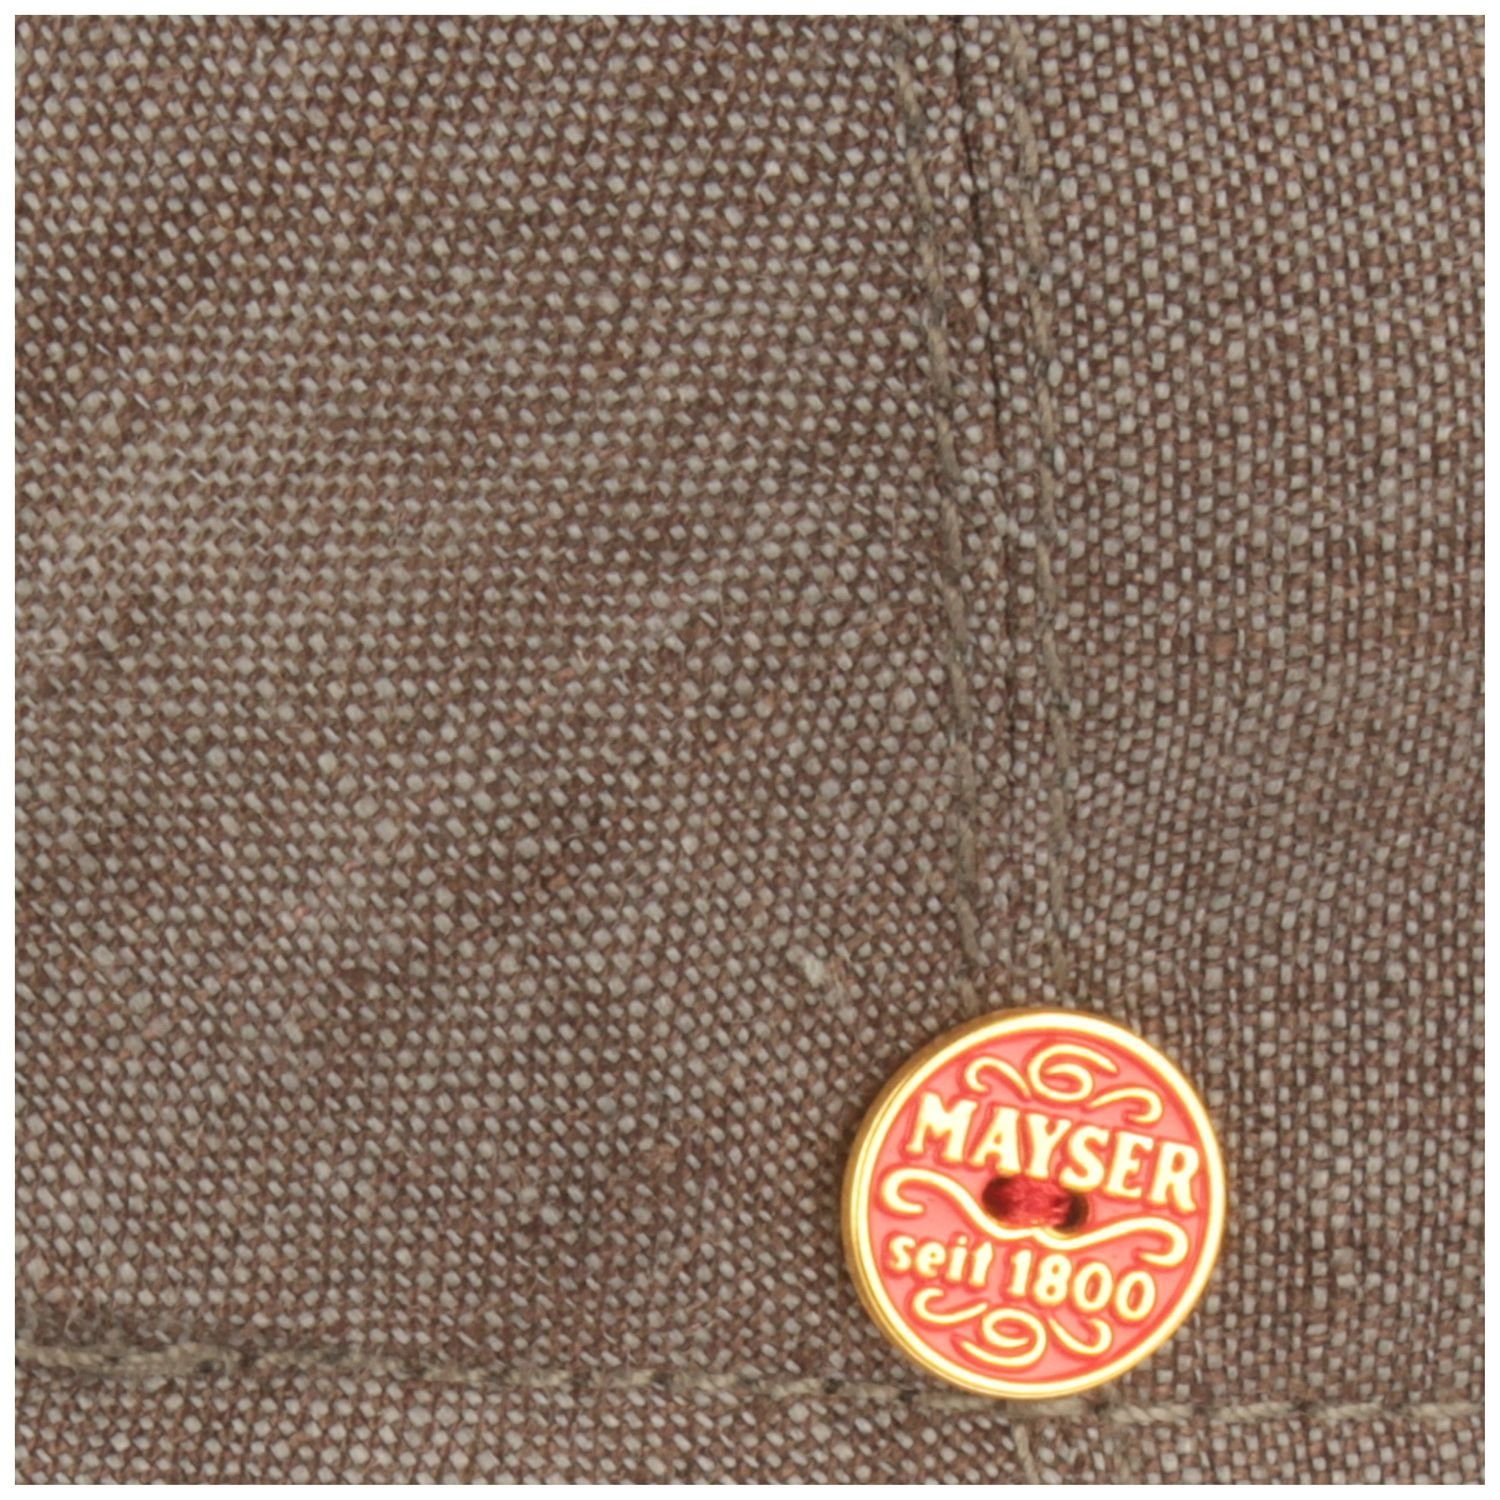 Leinen Mayser UV-Schutz 30 mit Sidney meliert braun Schiebermütze Mütze 9630 gem.